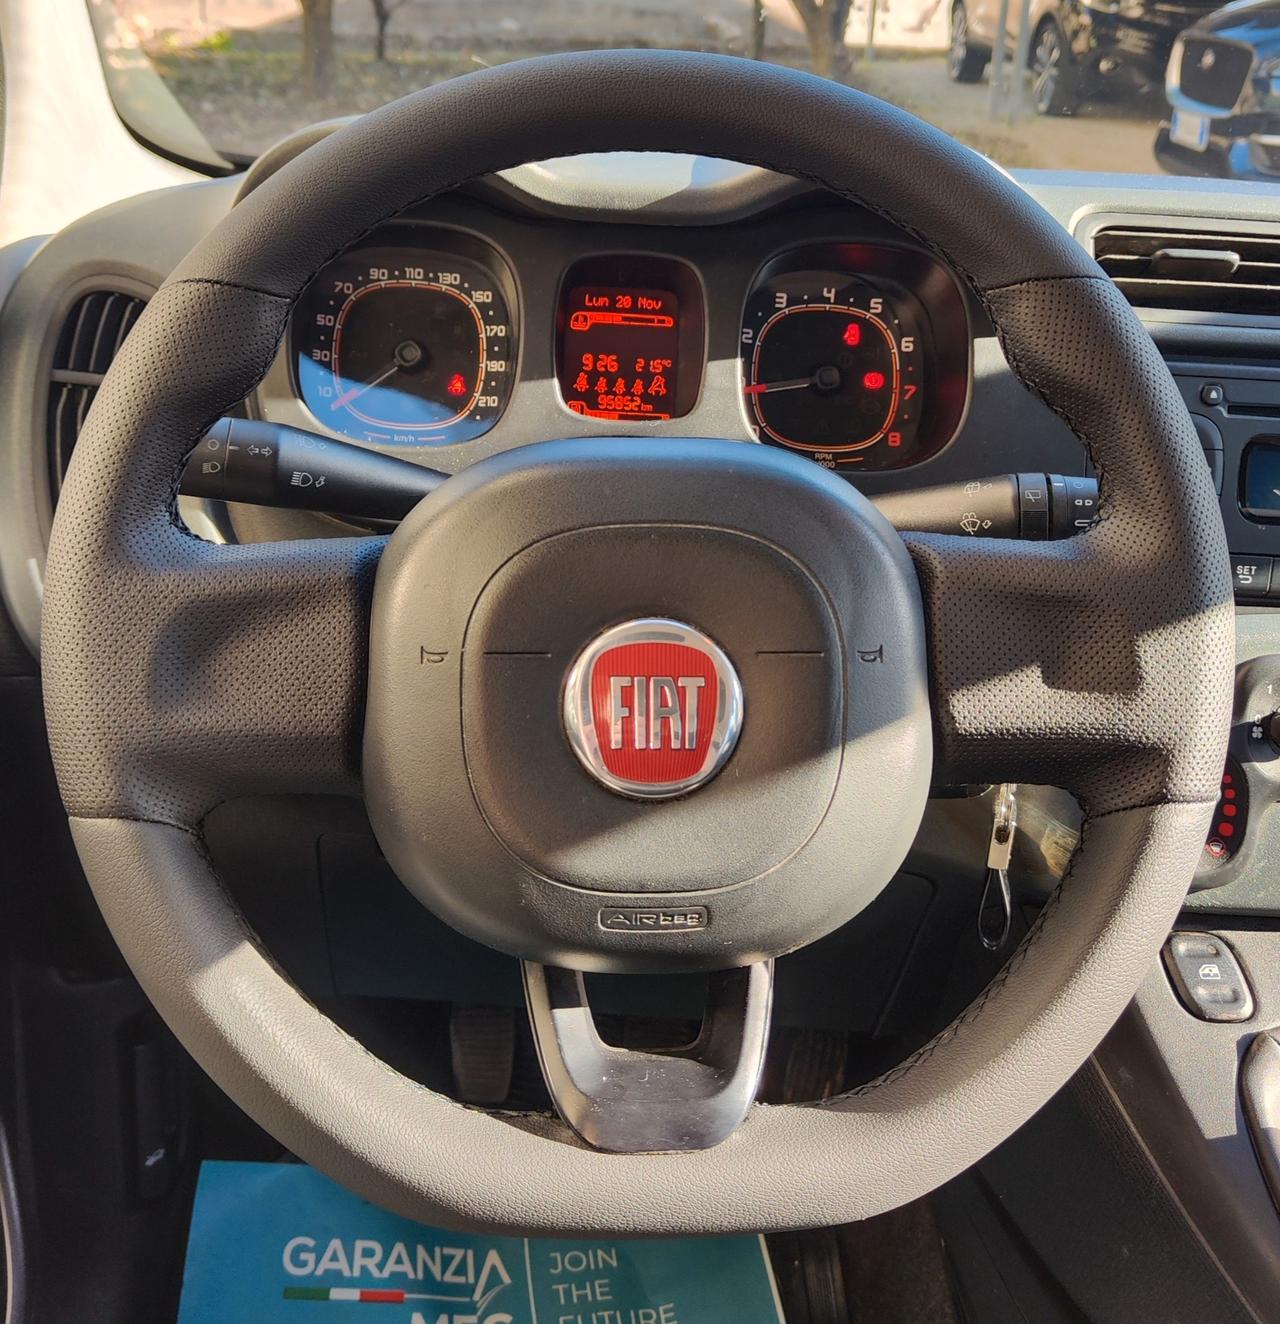 Fiat Panda 1.2 69CV ANNO 2018 NEO